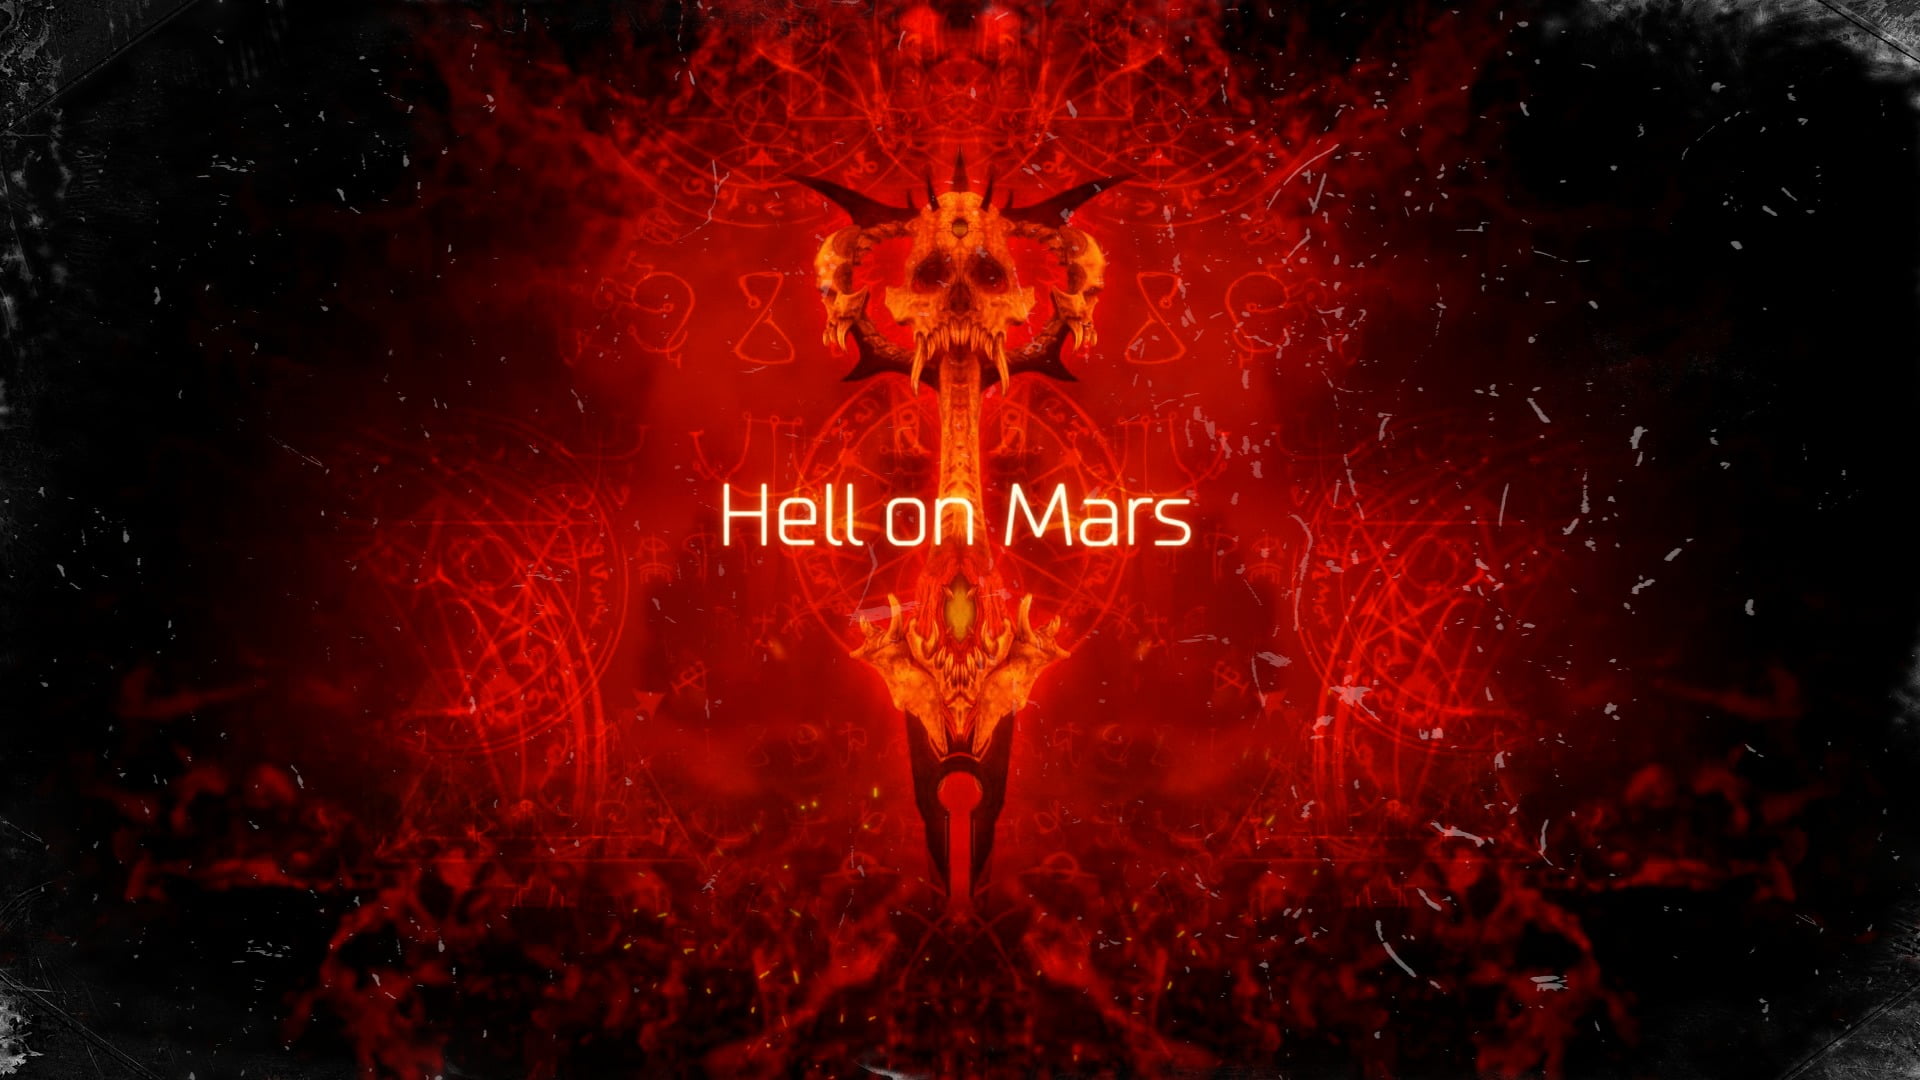 Hell on Mars digital wallpaper, Doom 4, Doom (game), red, communication